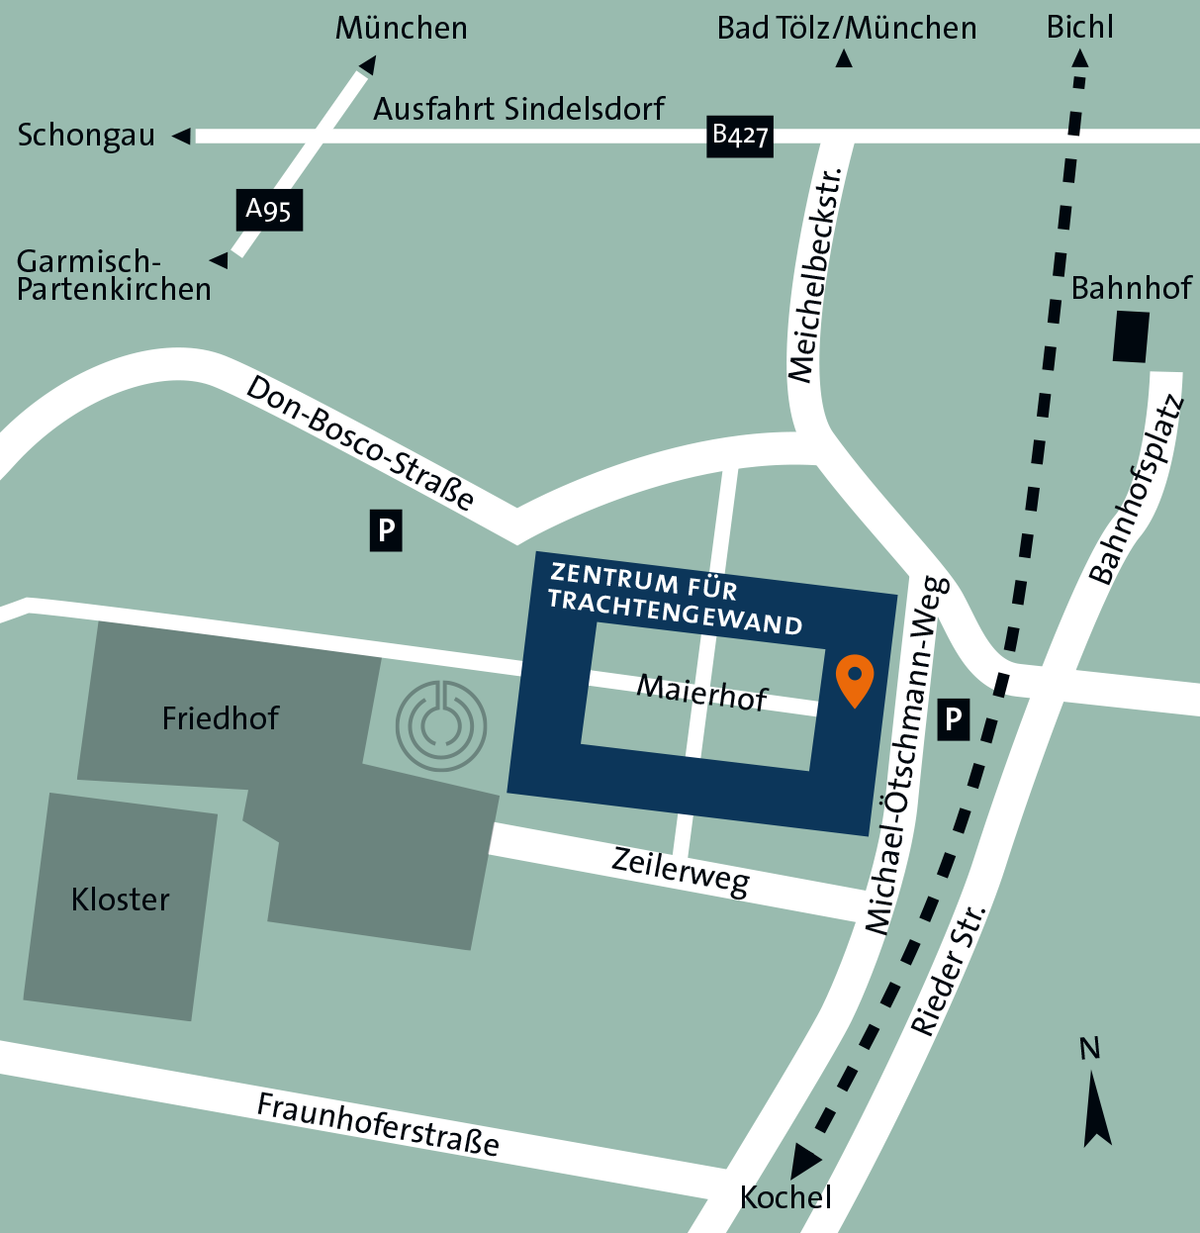 Stilisierter Kartenausschnitt vom Kloster Benediktbeuern und Umgebung mit der Lage des Zentrums für Trachtengewand im Maierhof und der Autobahnanbindung sowie dem Bahnhof